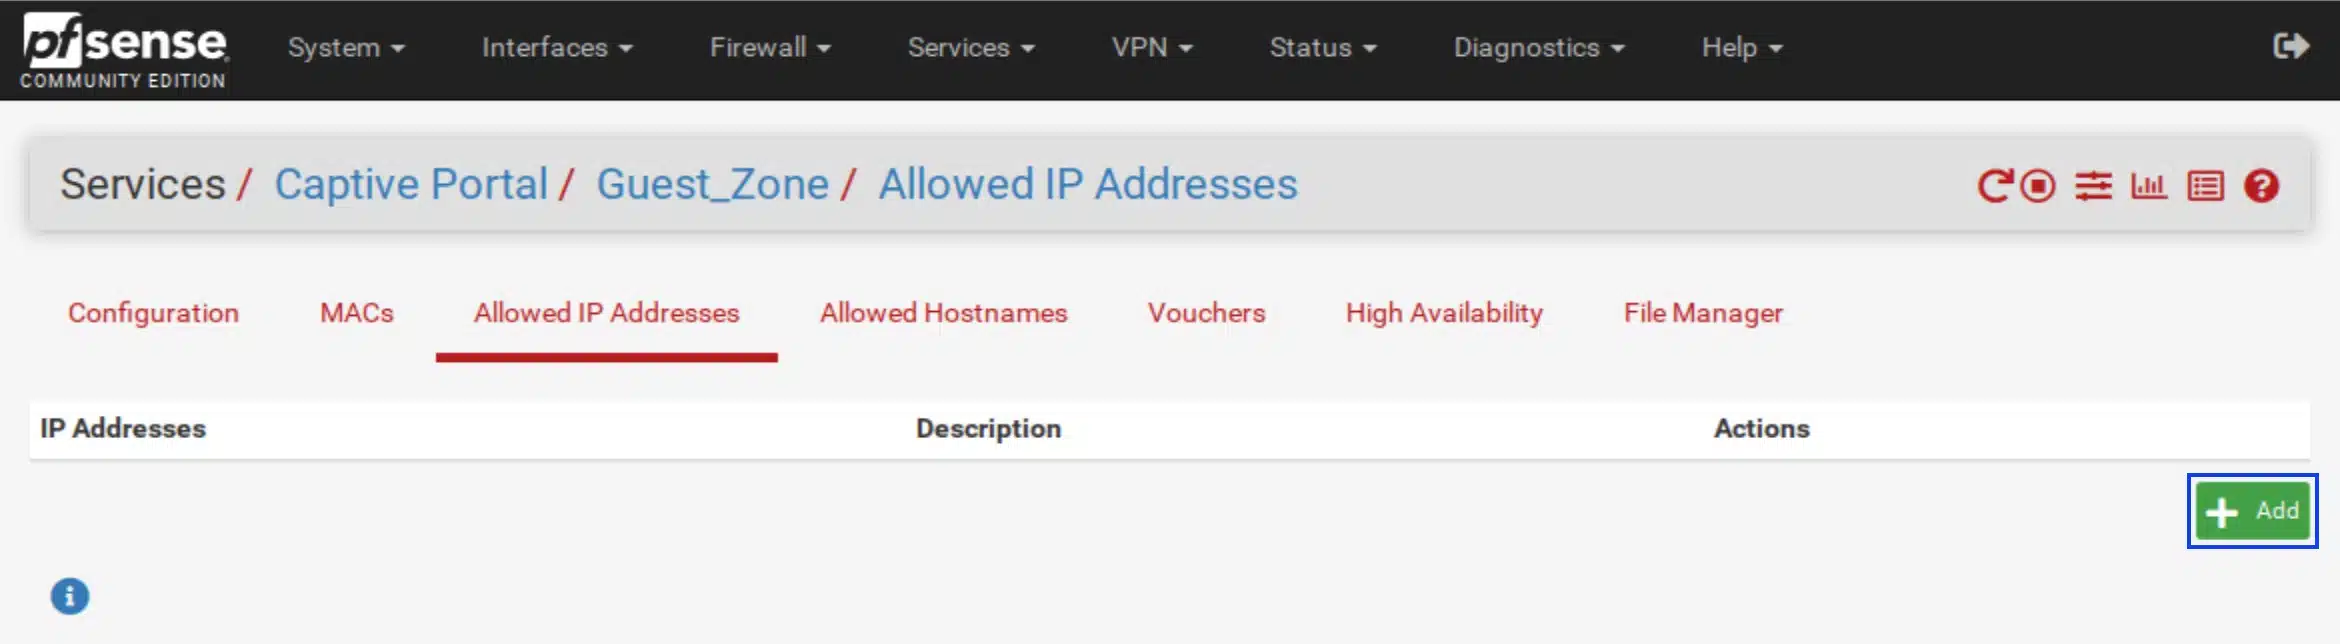 pfSense - Captive Portal - Allowed IPs Tab - Click Add